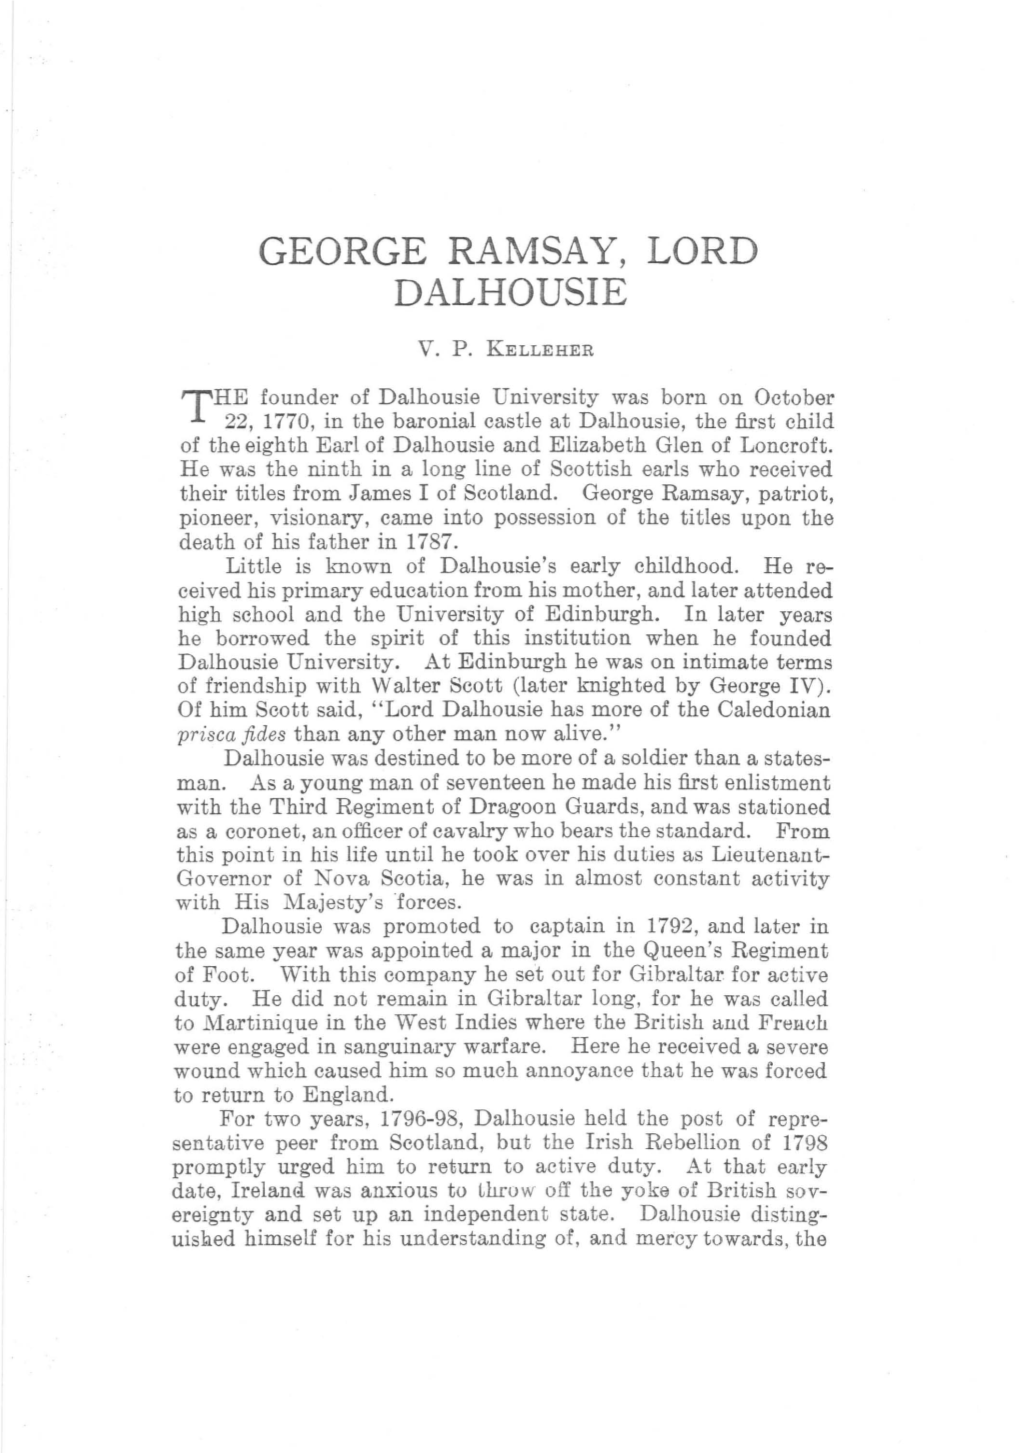 George Ramsay, Lord Dalhousie